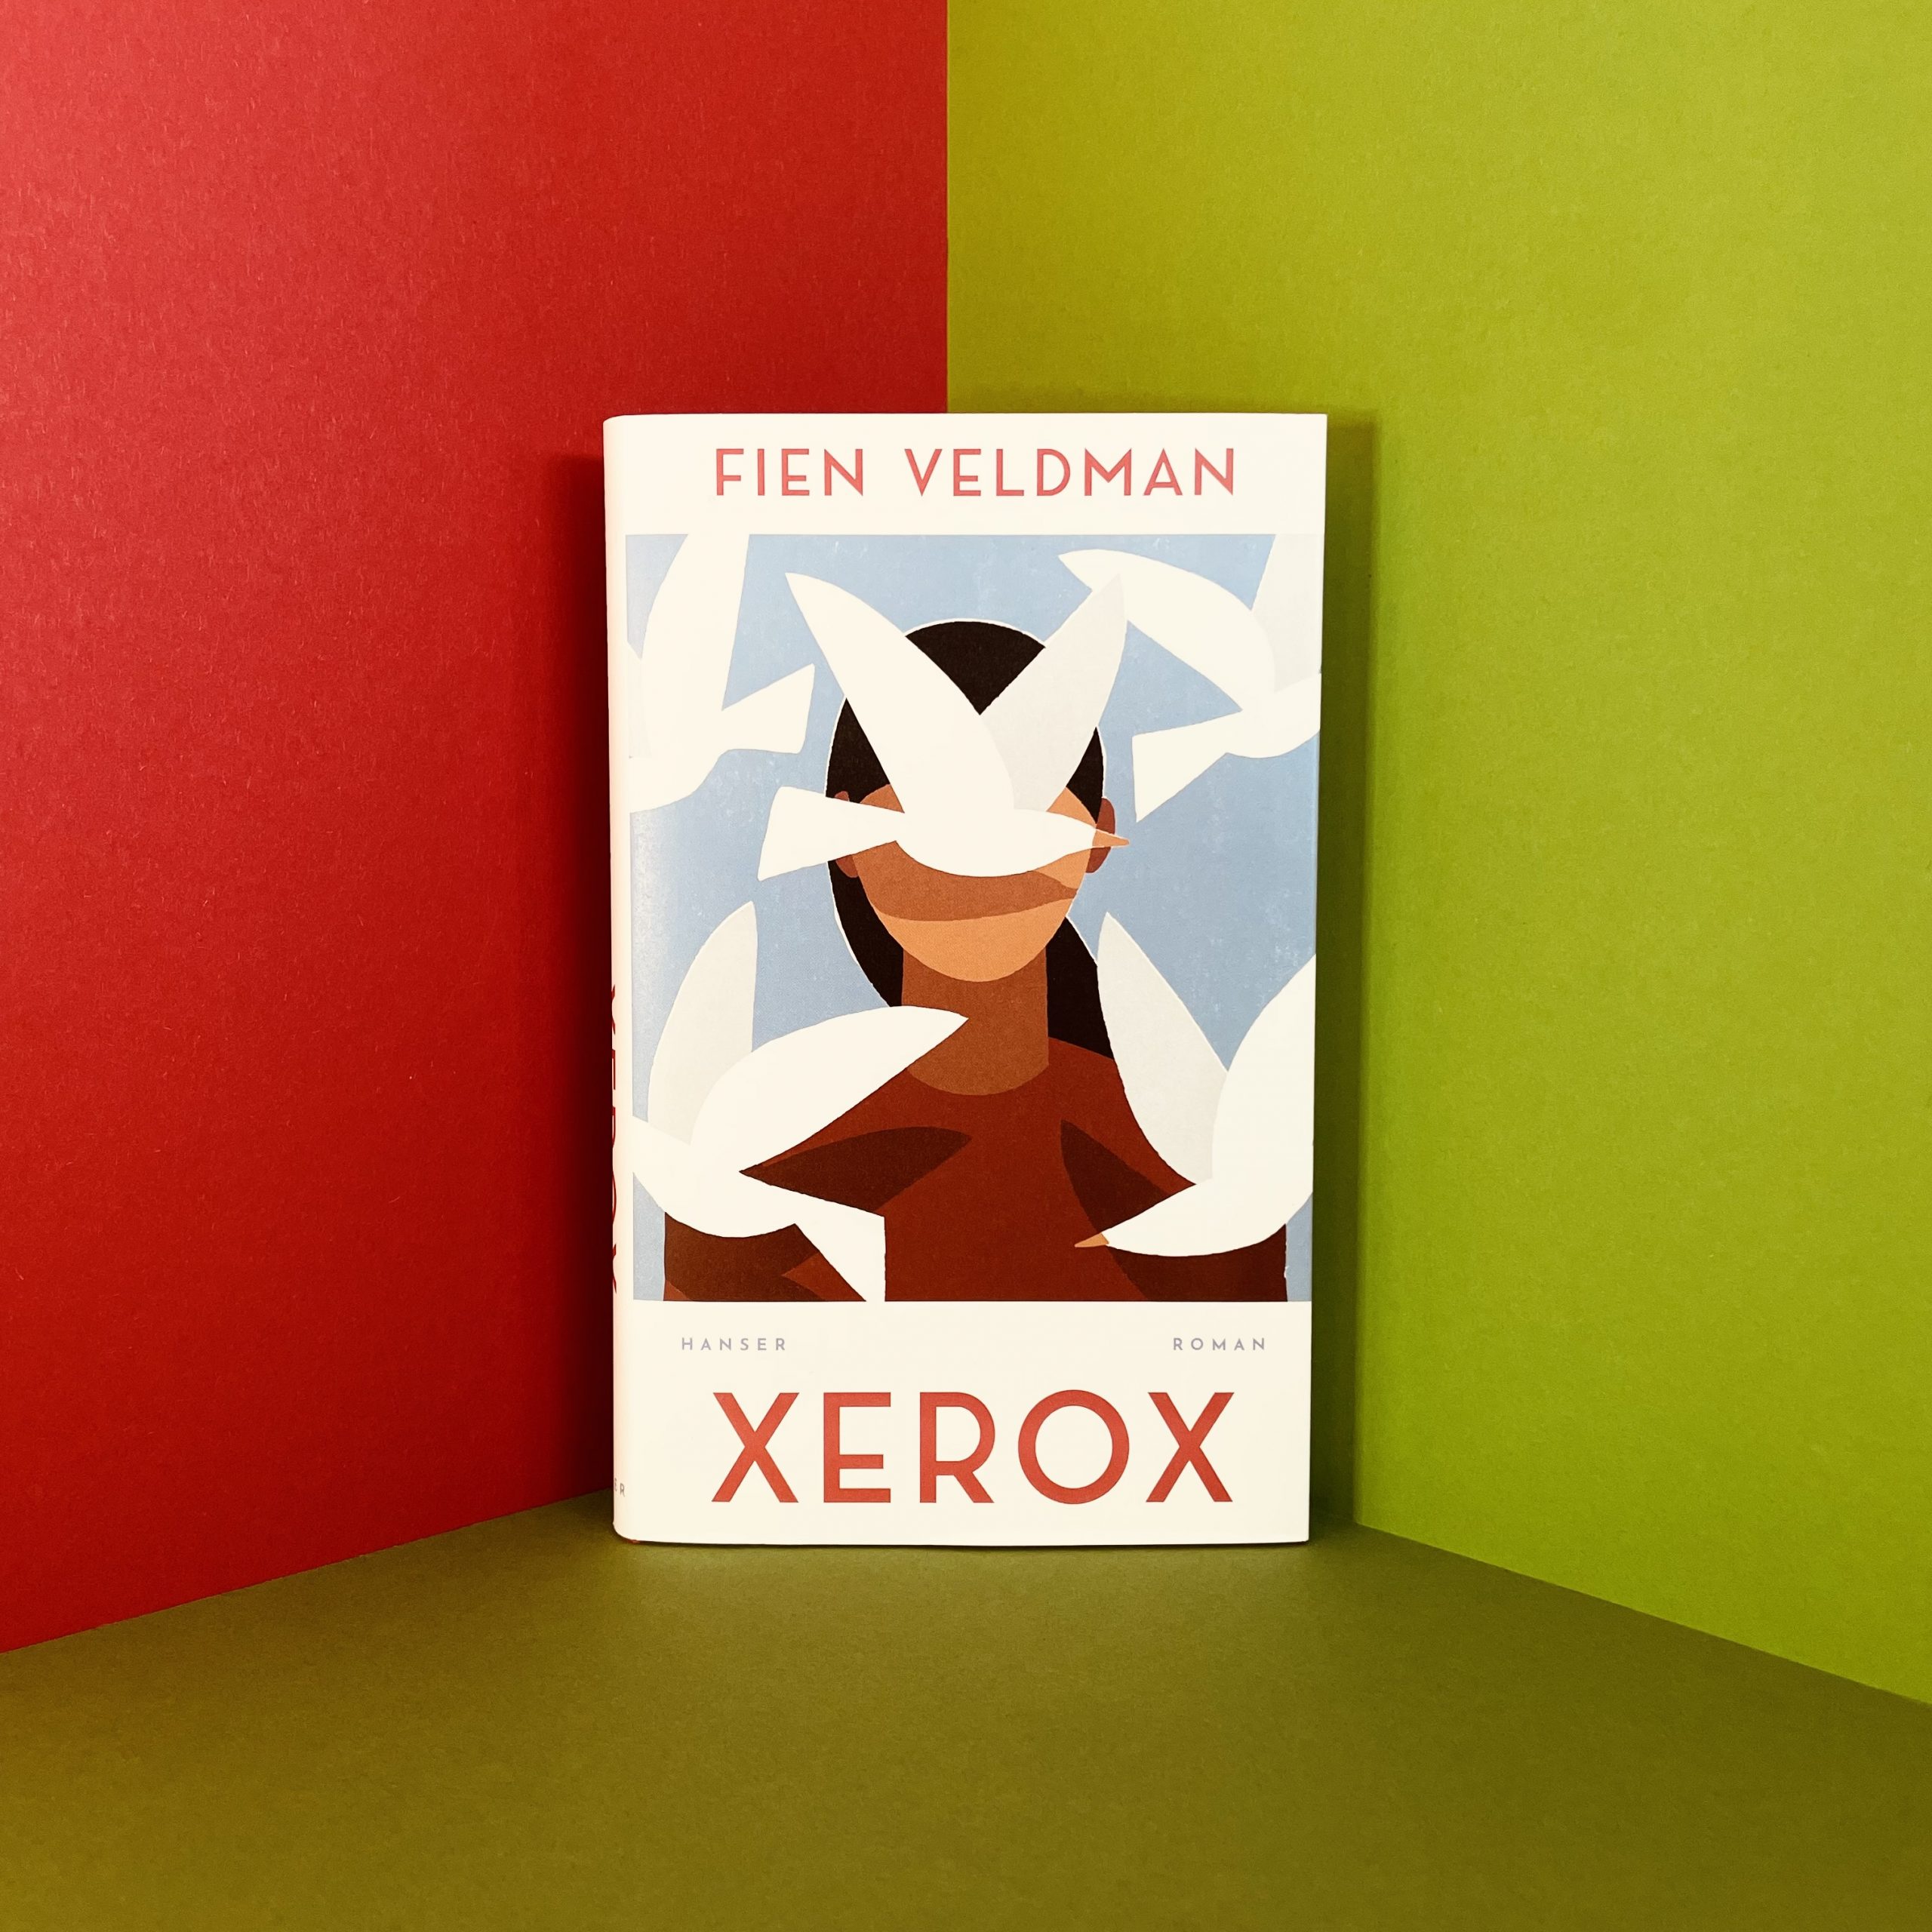 XEROX von Fien Veldman